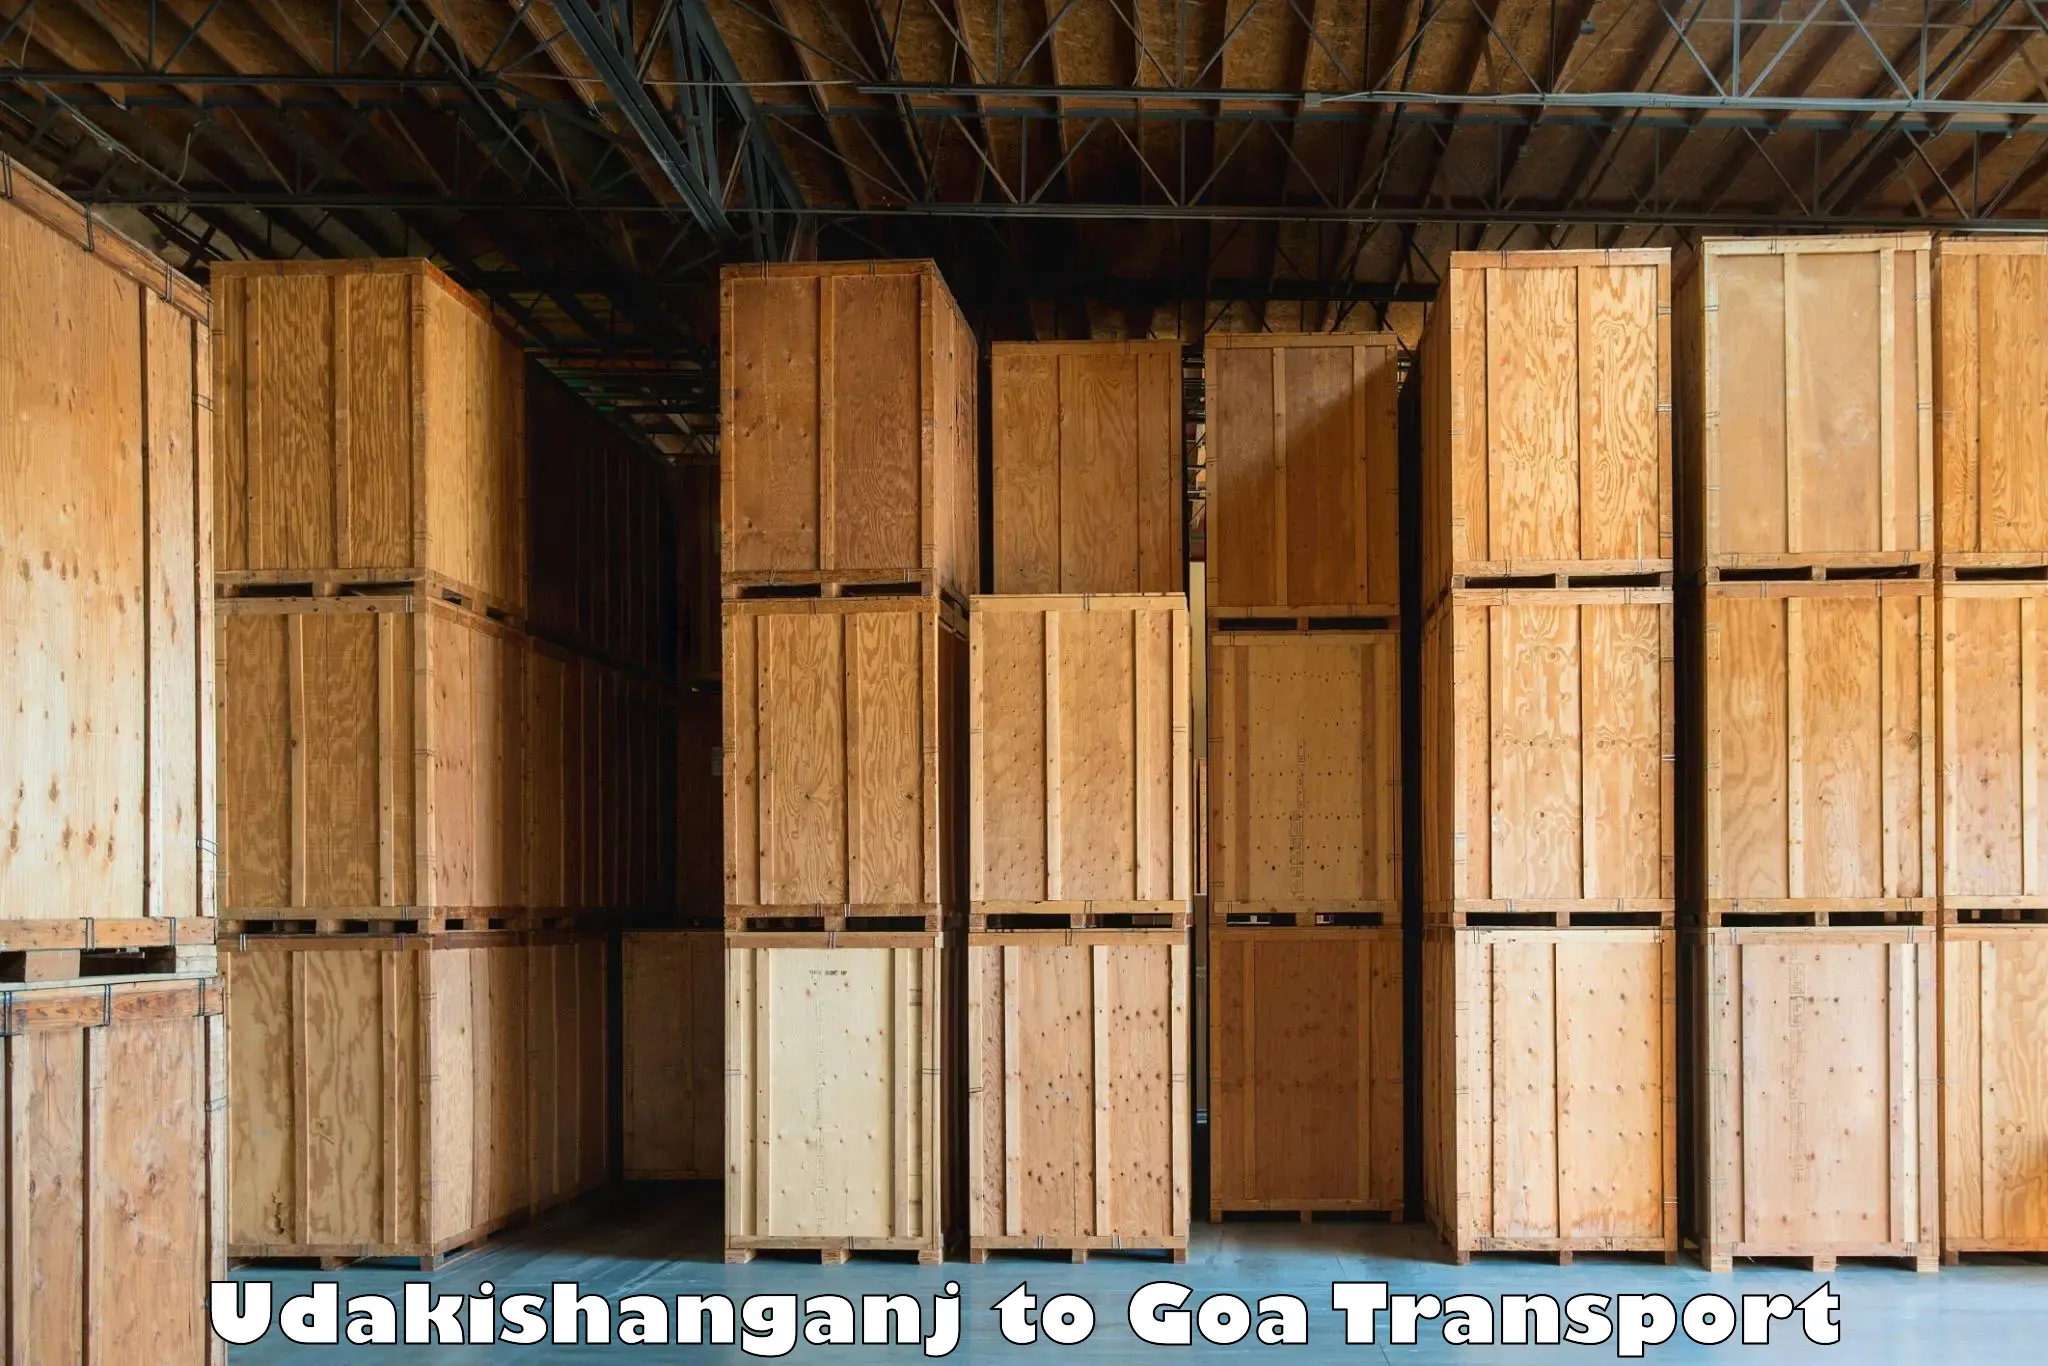 Transportation services in Udakishanganj to Margao